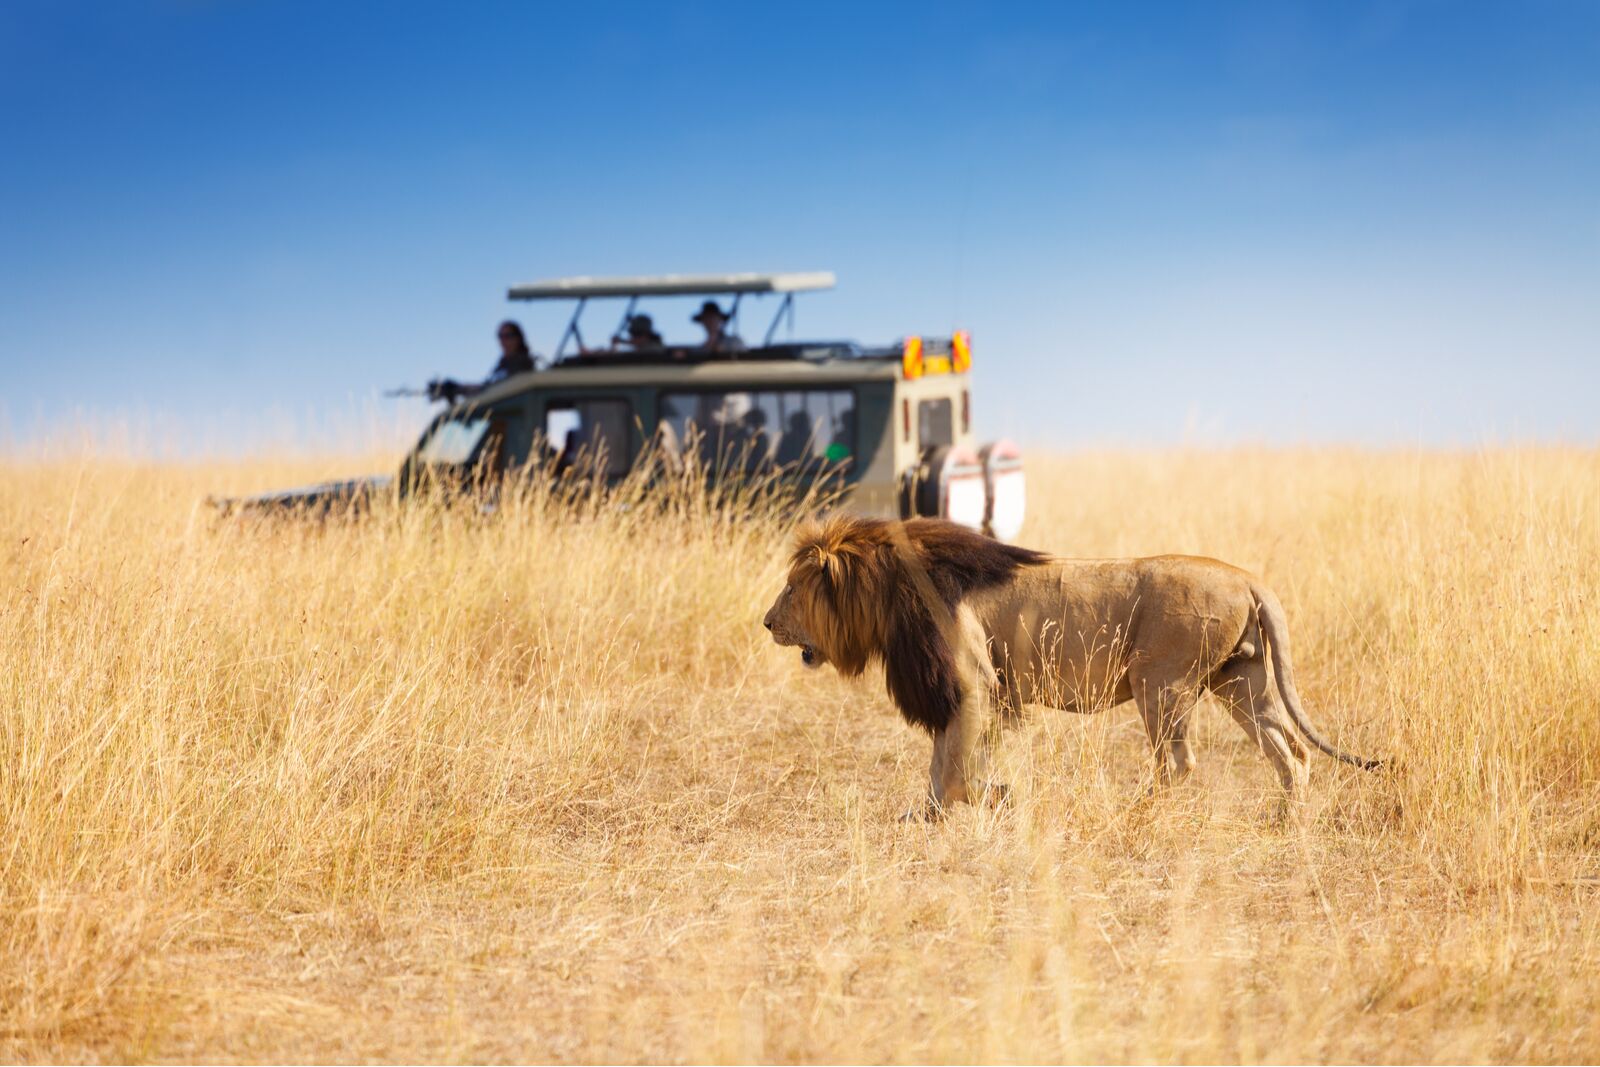 Lion and safari vehicle 